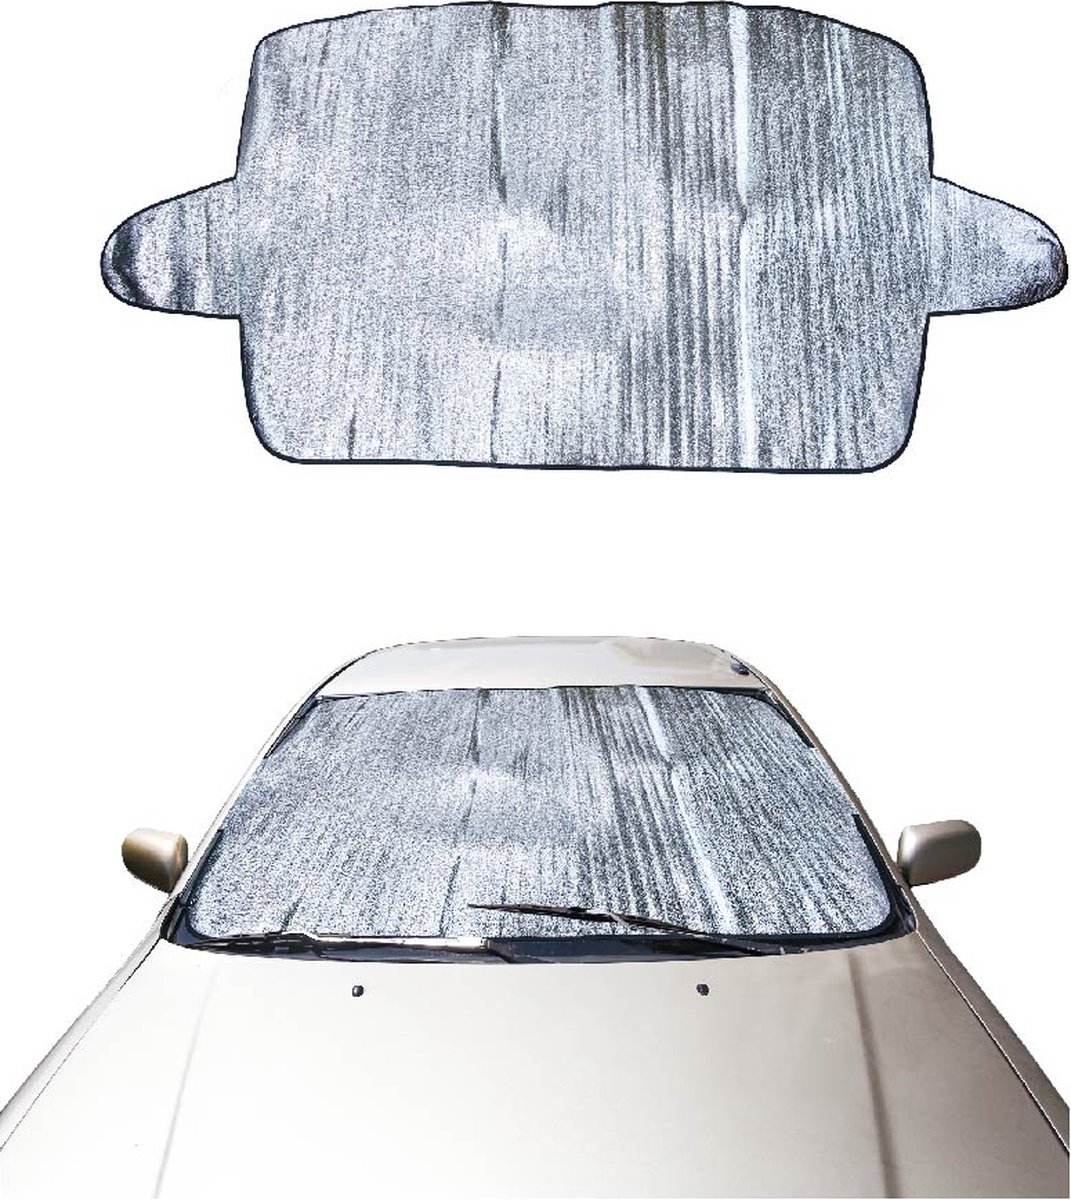 Anti vriesdeken auto - Anti ijsdeken met deurbevestiging - Metallic look - Voorruitfolie - b 1,90 m x h 0,7 m 2 stuks voor de prijs van een - Wintershield